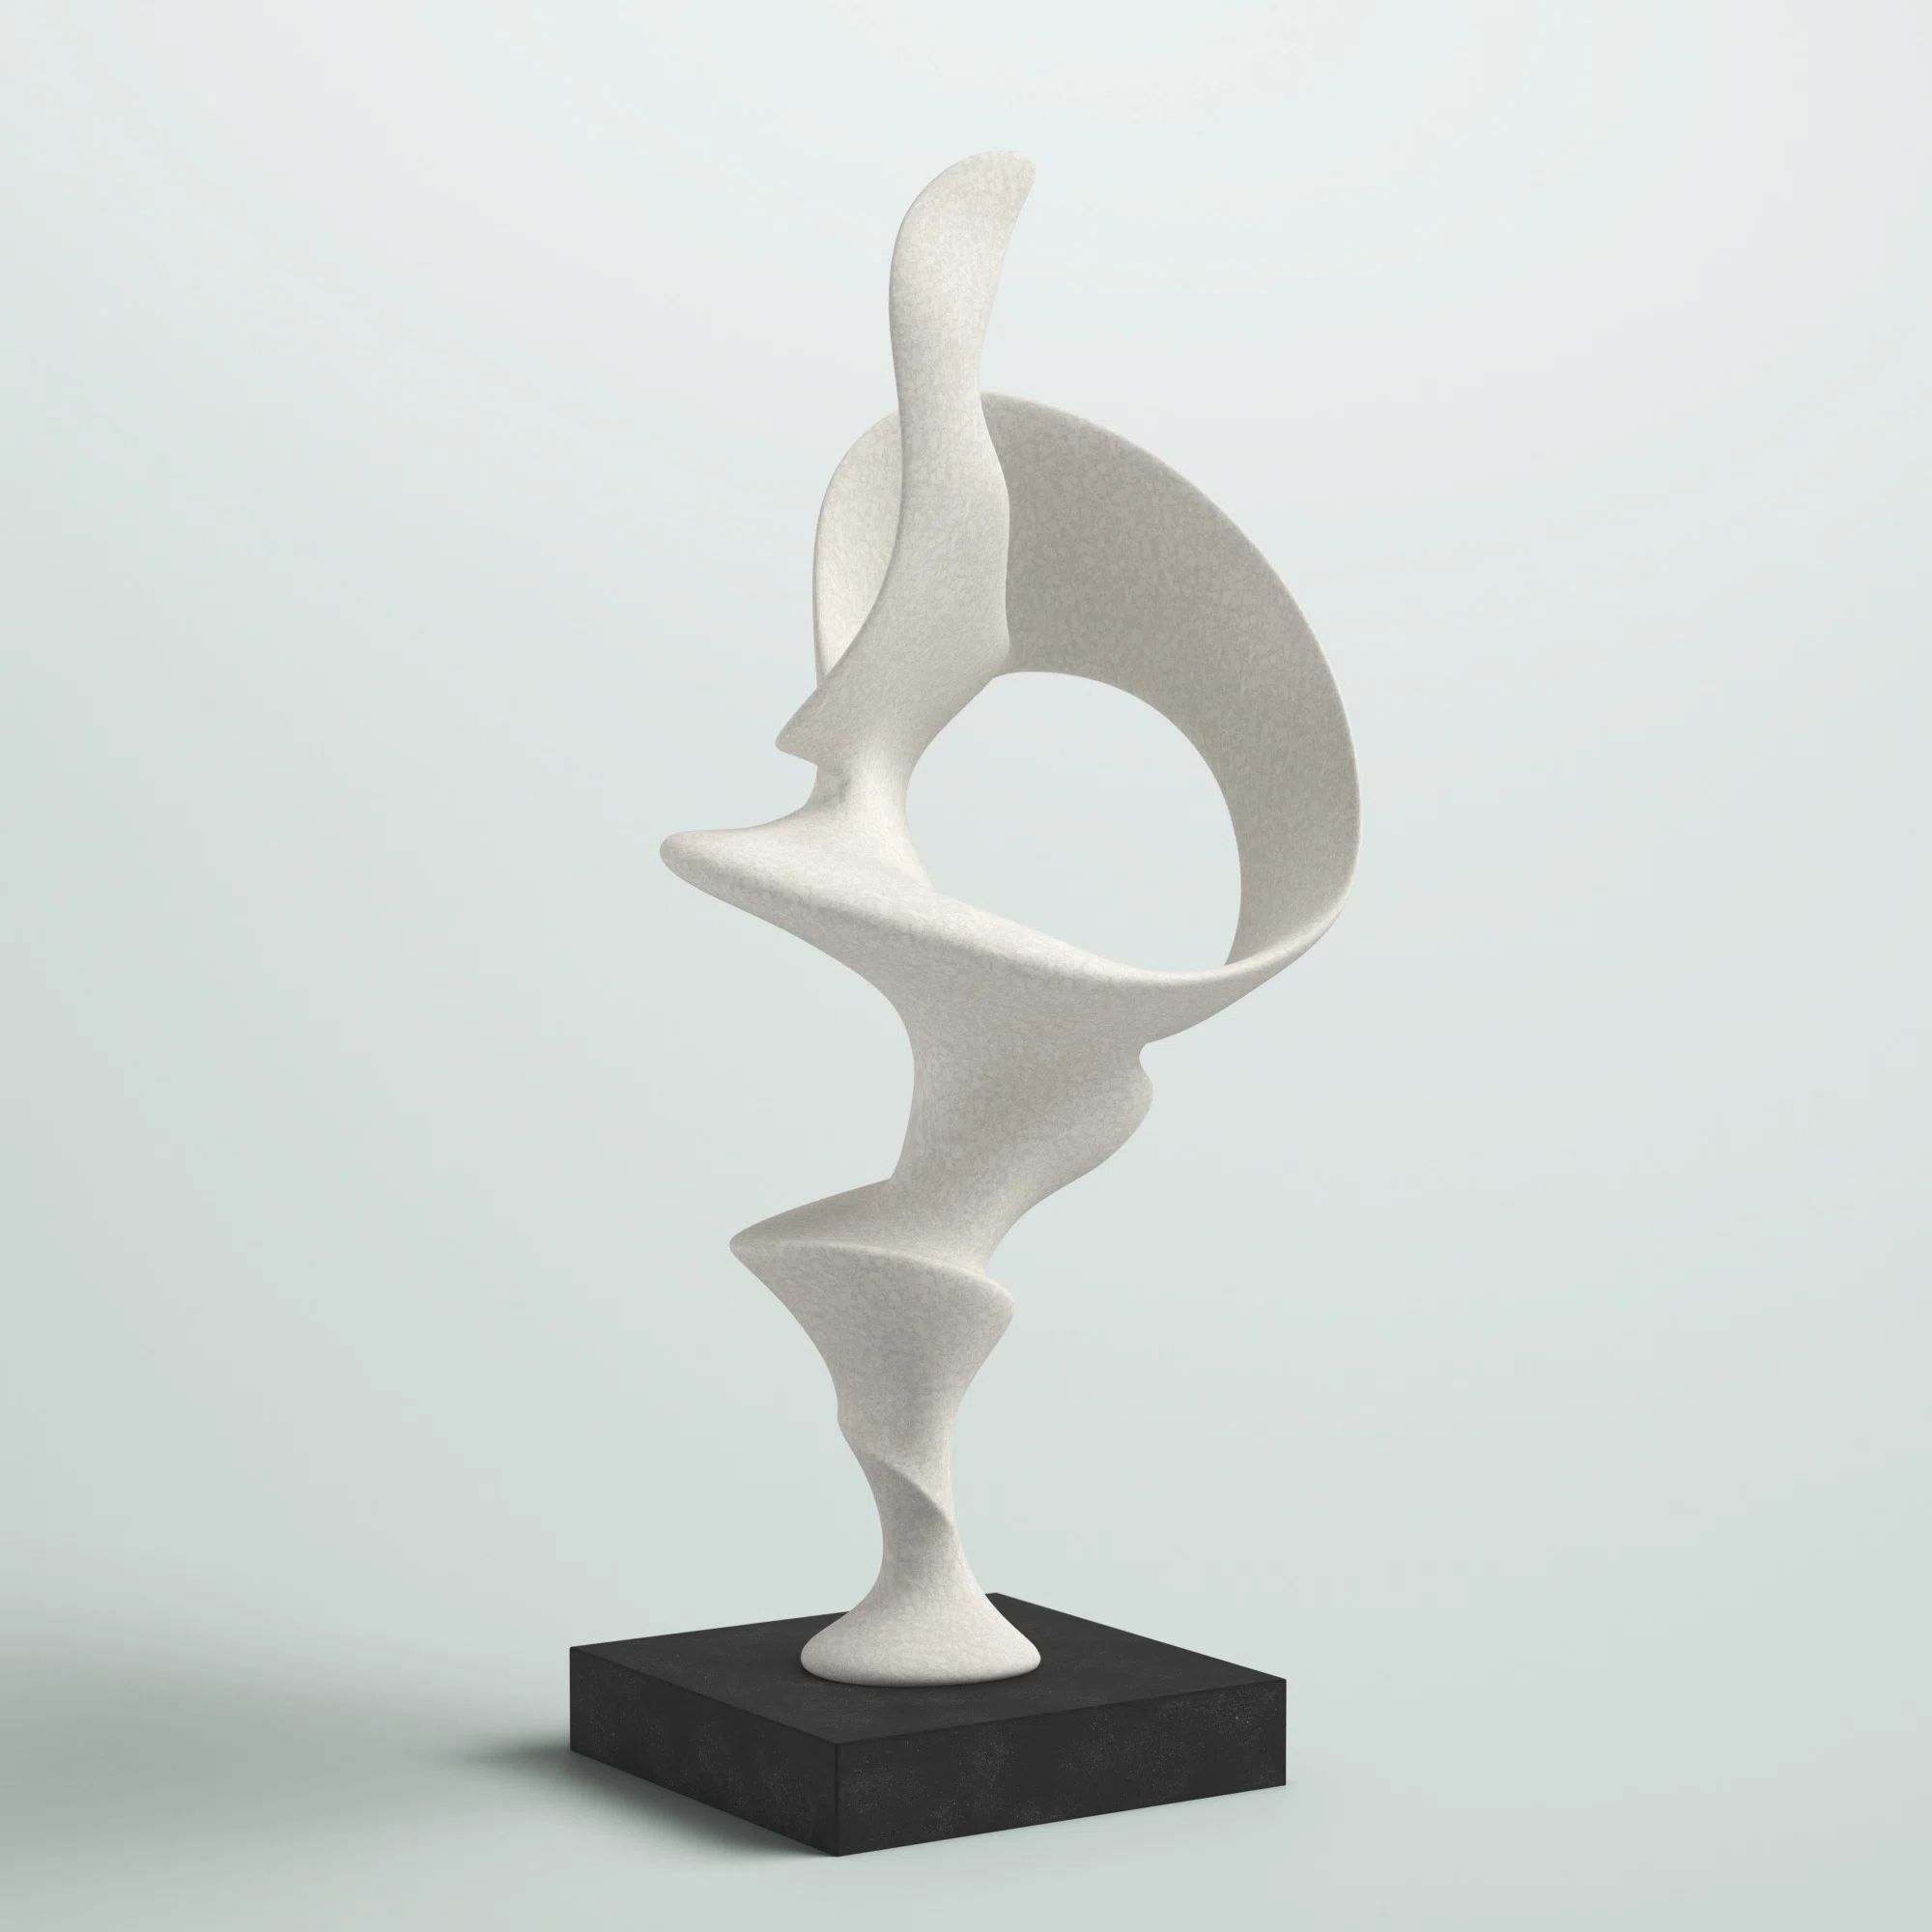 Leiston Sculpture | Wayfair North America